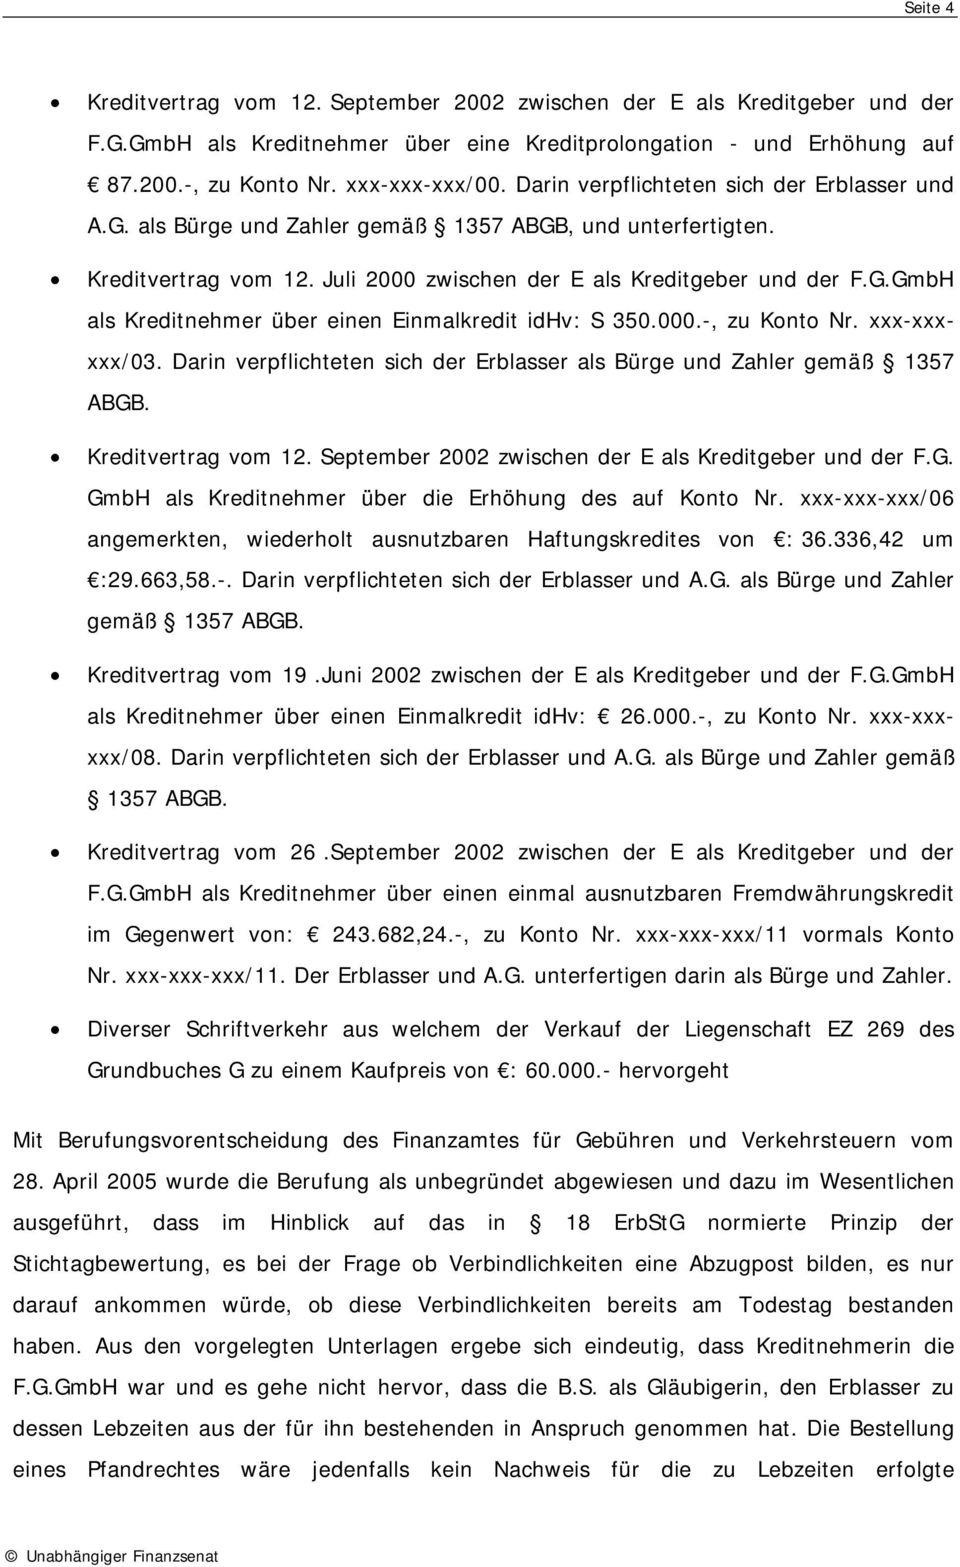 000.-, zu Konto Nr. xxx-xxxxxx/03. Darin verpflichteten sich der Erblasser als Bürge und Zahler gemäß 1357 ABGB. Kreditvertrag vom 12. September 2002 zwischen der E als Kreditgeber und der F.G. GmbH als Kreditnehmer über die Erhöhung des auf Konto Nr.